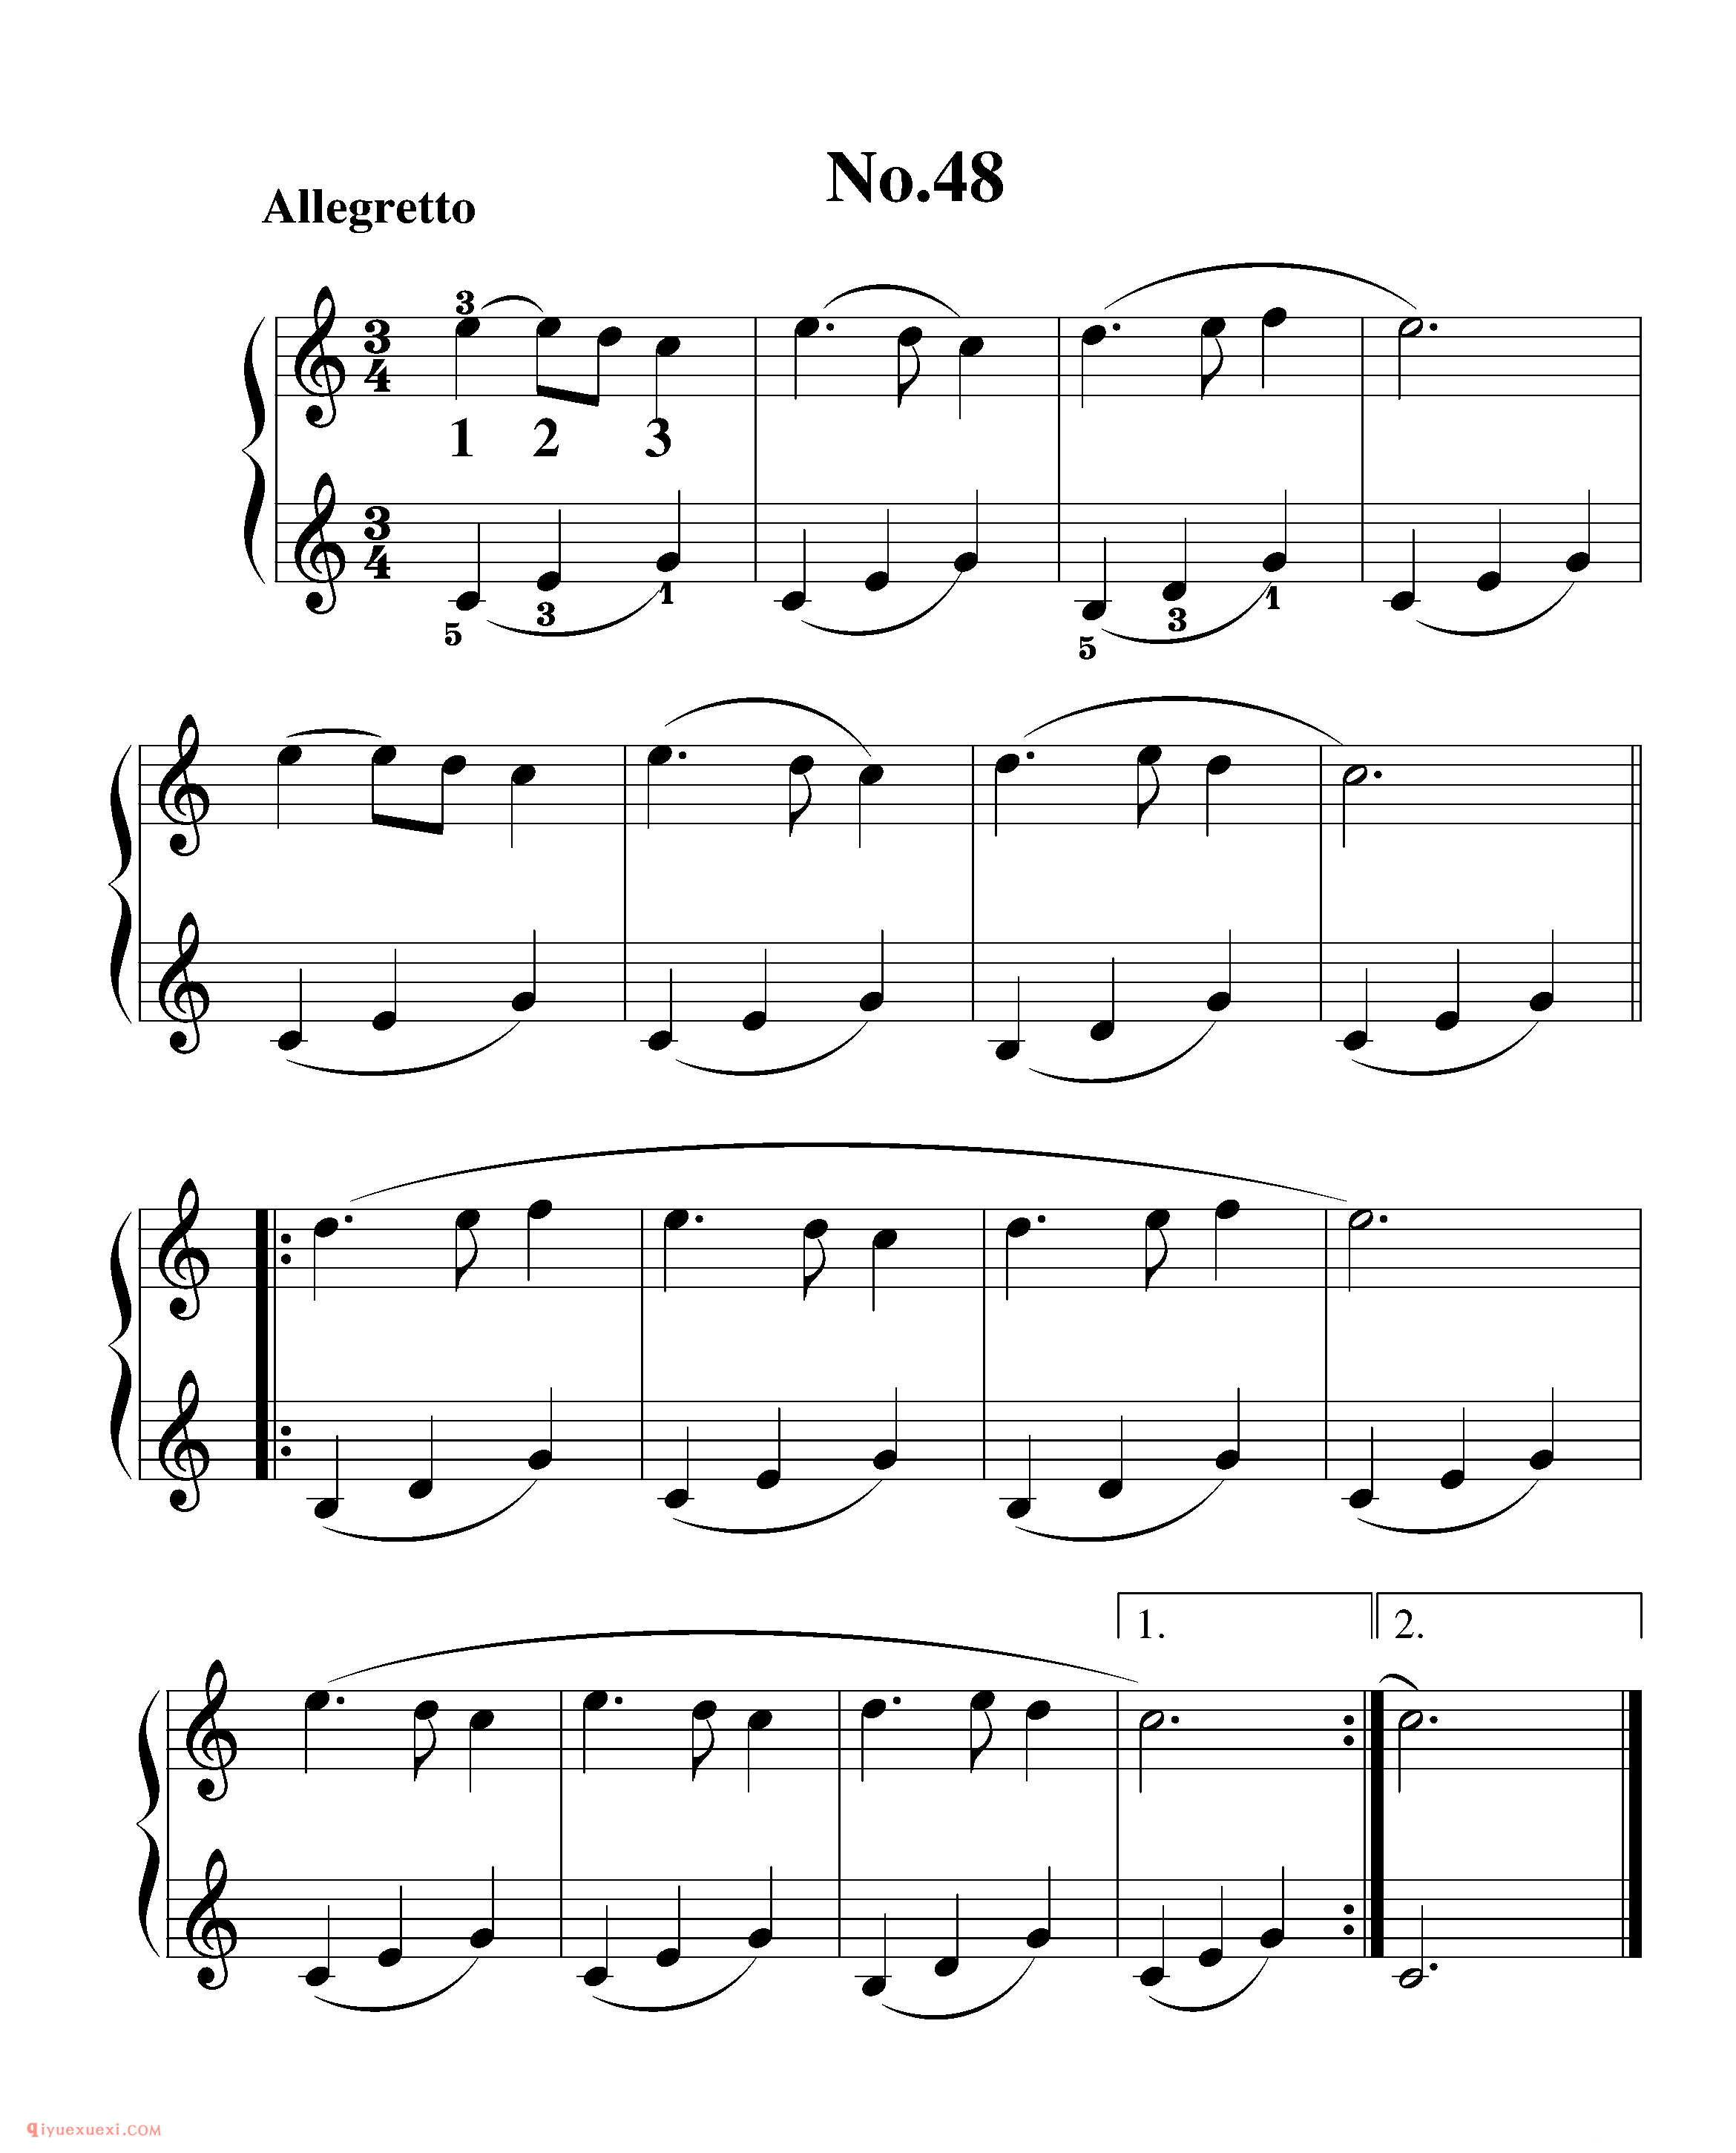 拜厄钢琴练习曲NO.48_拜尔(拜厄)钢琴基本教程练习曲第48首_五线谱